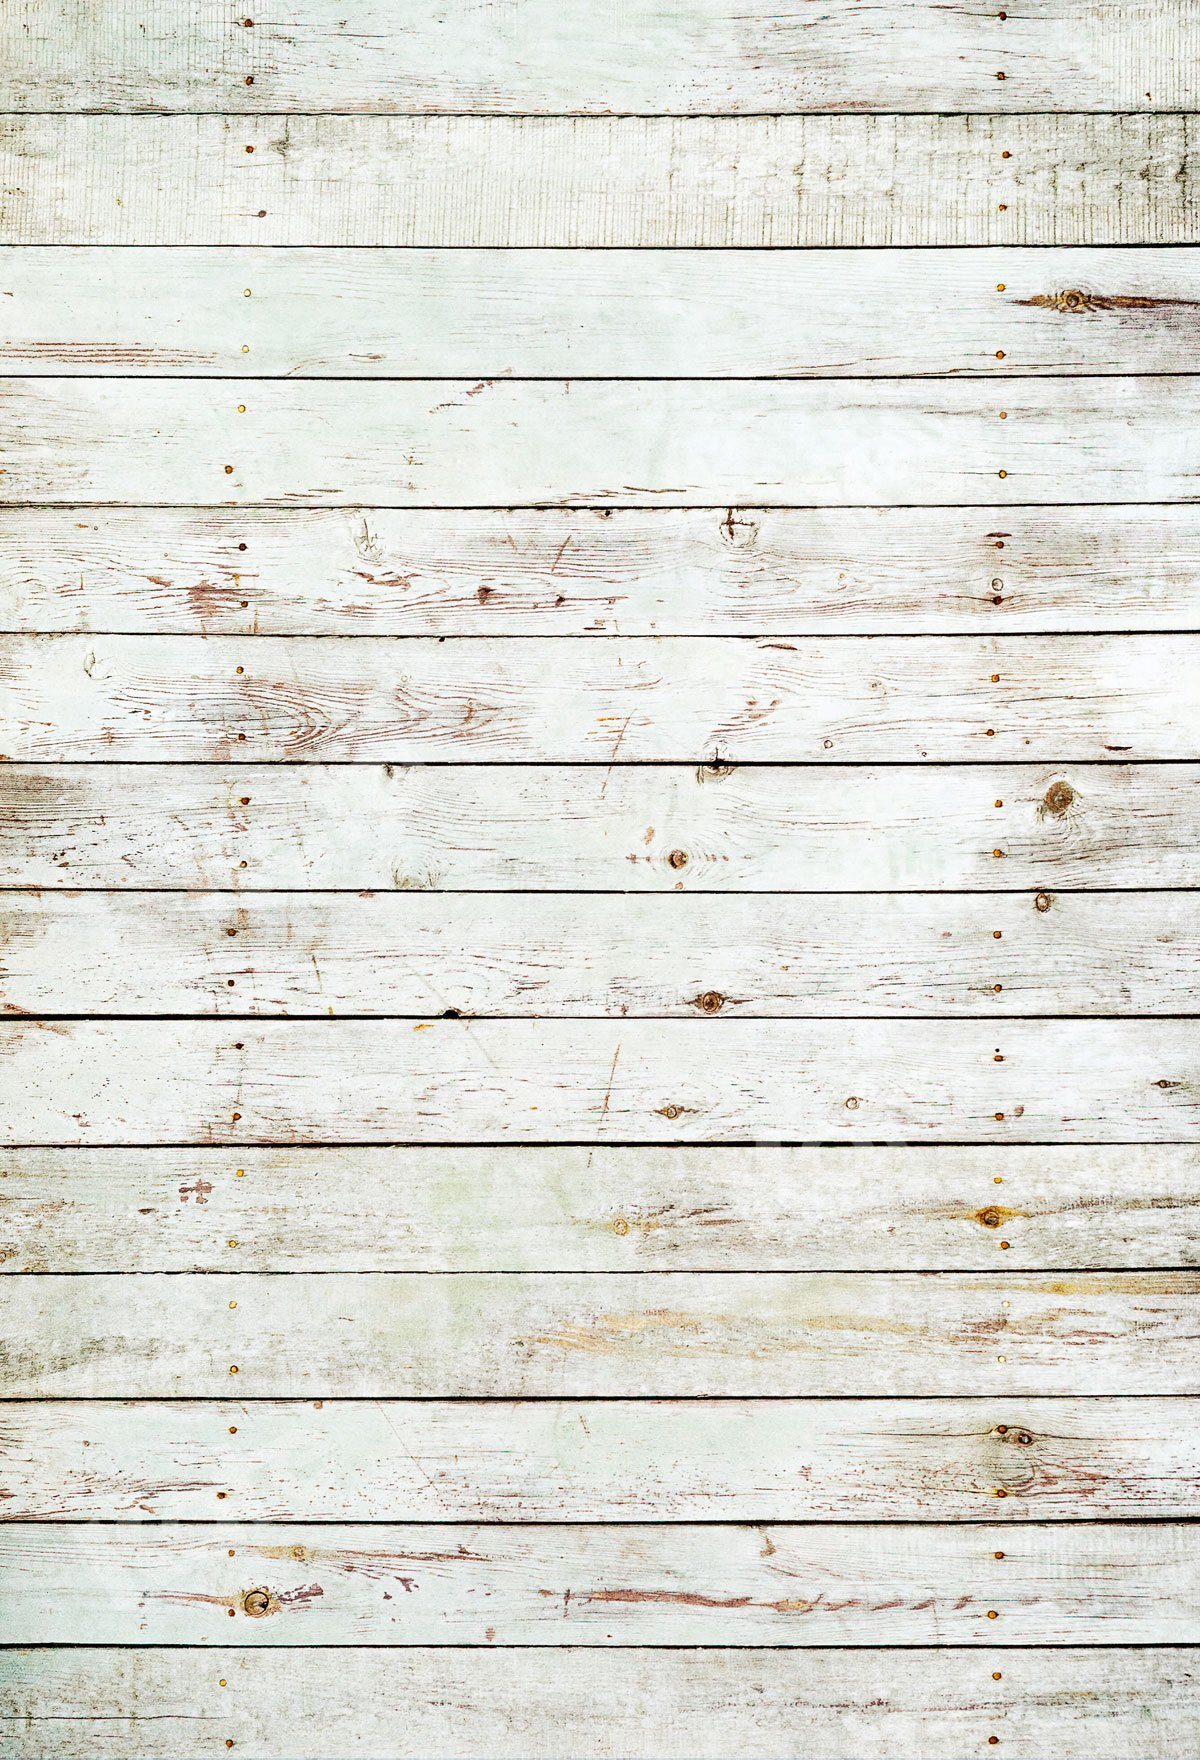 kate子供の写真撮影のためのレトロホワイトグレー木製背景